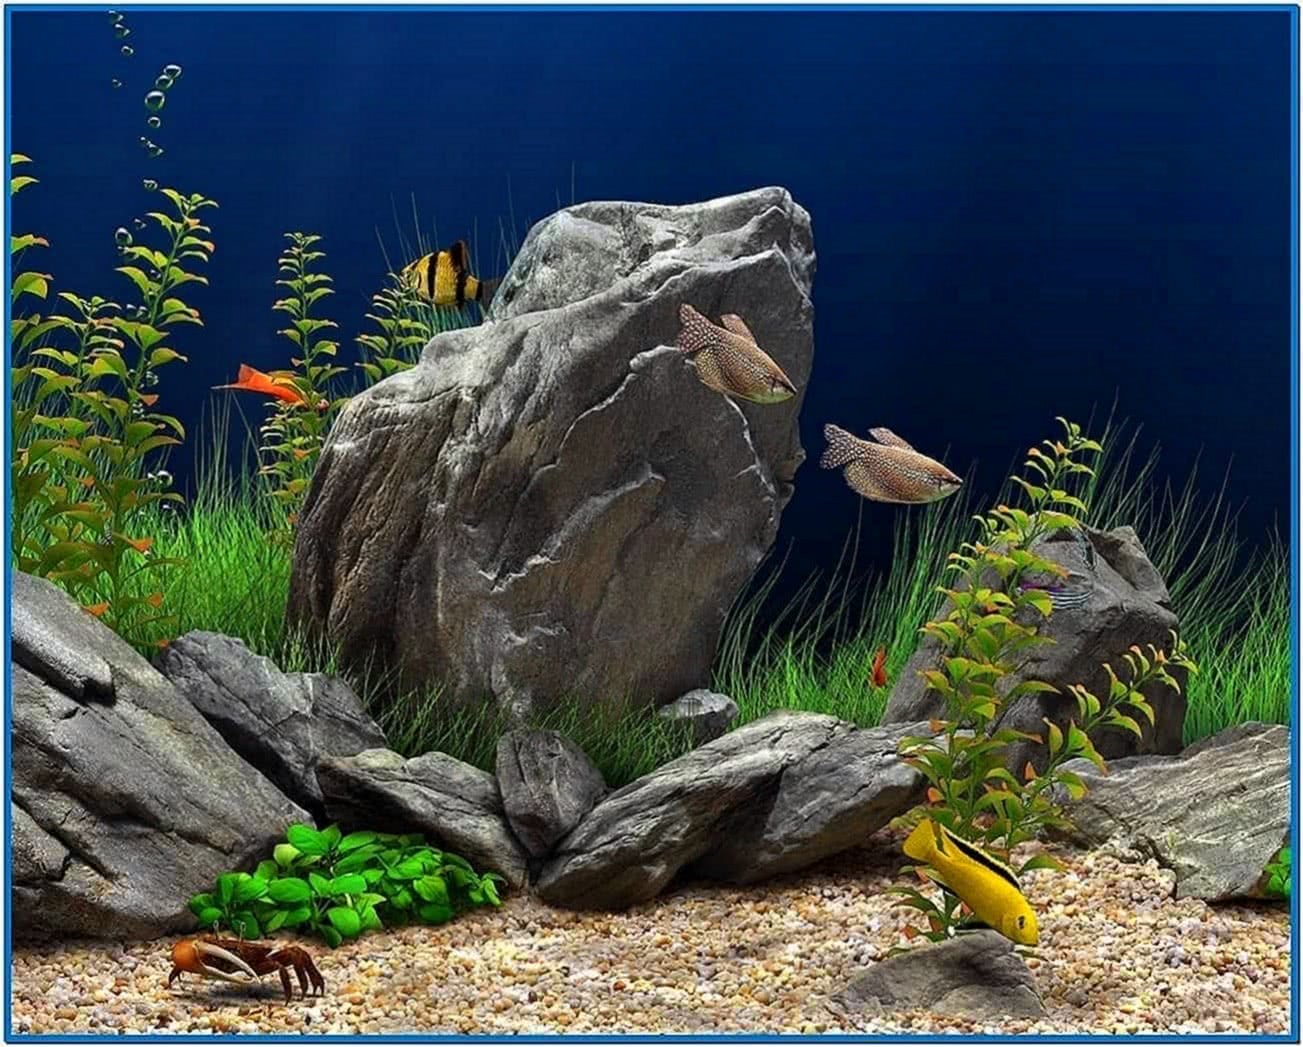 Dream aquarium screensaver for windows 7